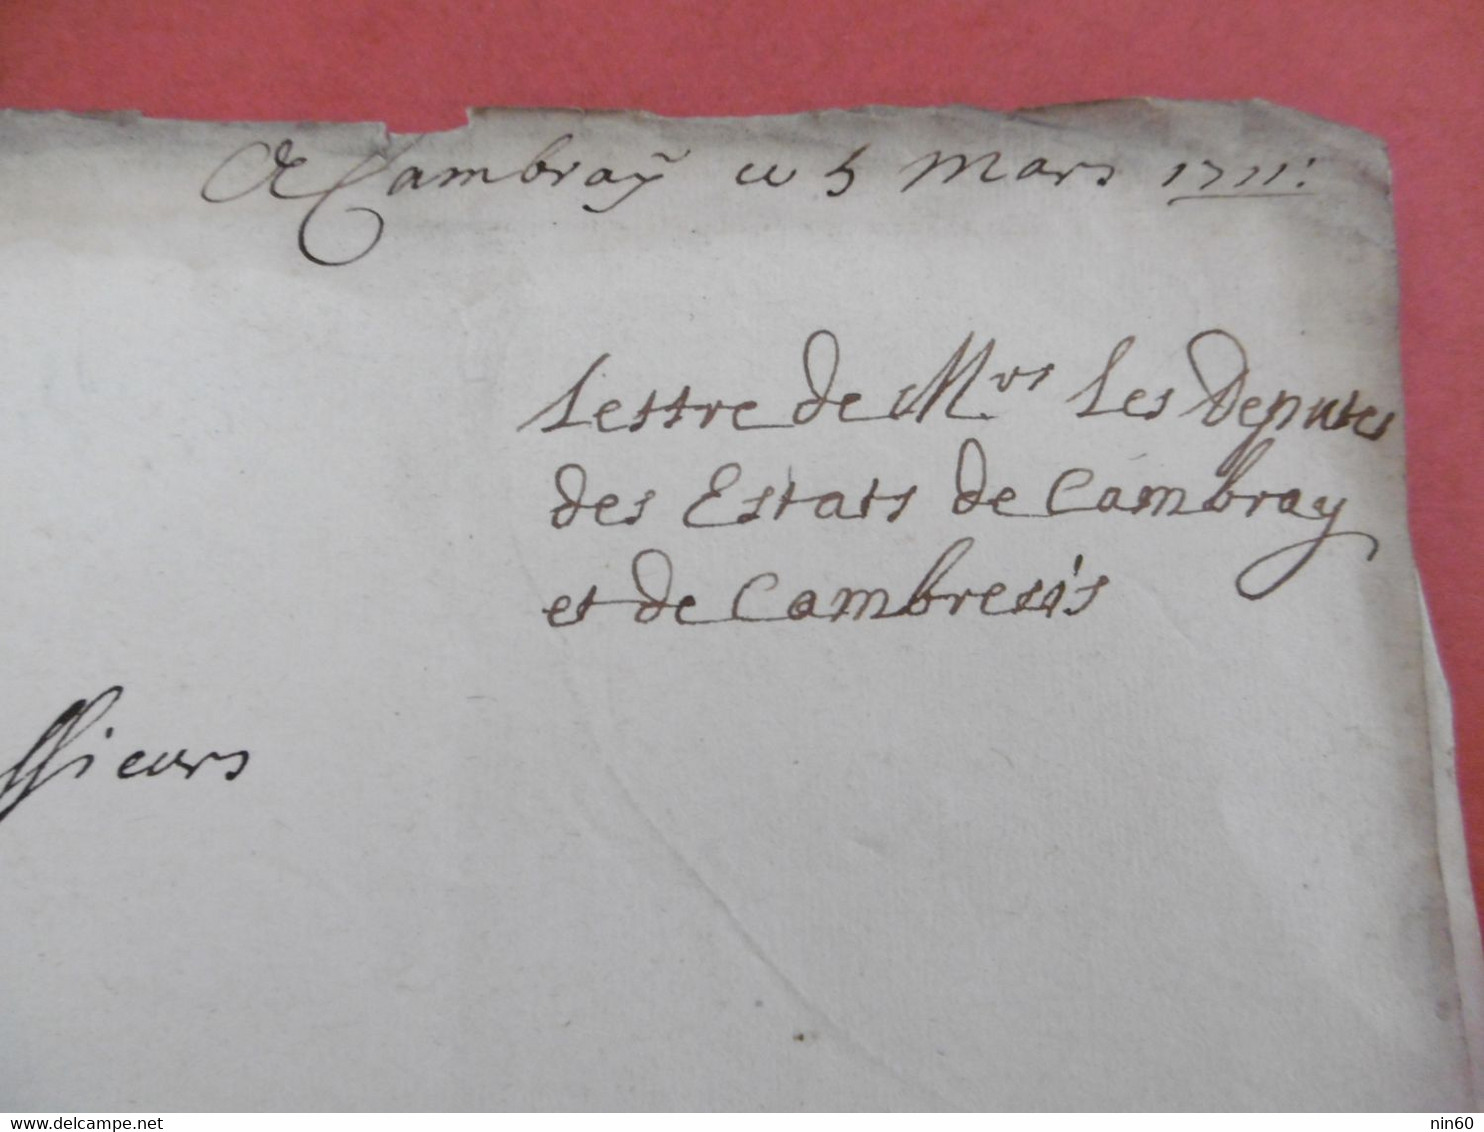 CAMBRAI 5 Mars 1711. Requete Députés De Cambray Et Cambresis Au Conseil D'Etat. Augmentation Exorbitante Appointements - Manuscripts